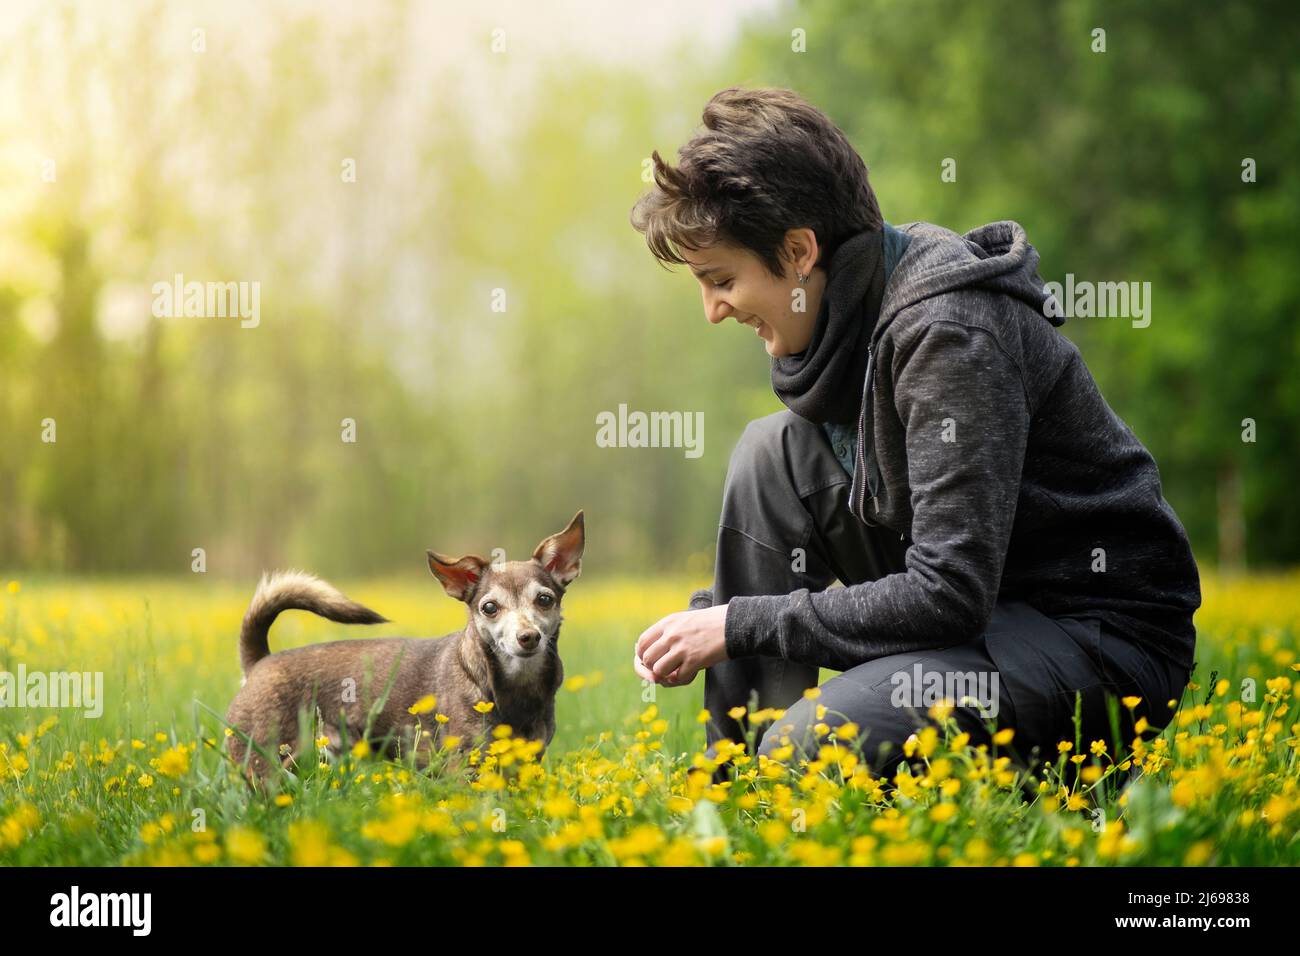 Un petit chien et son propriétaire se sont accrouis dans un champ rempli de fleurs jaunes, Italie, Europe Banque D'Images